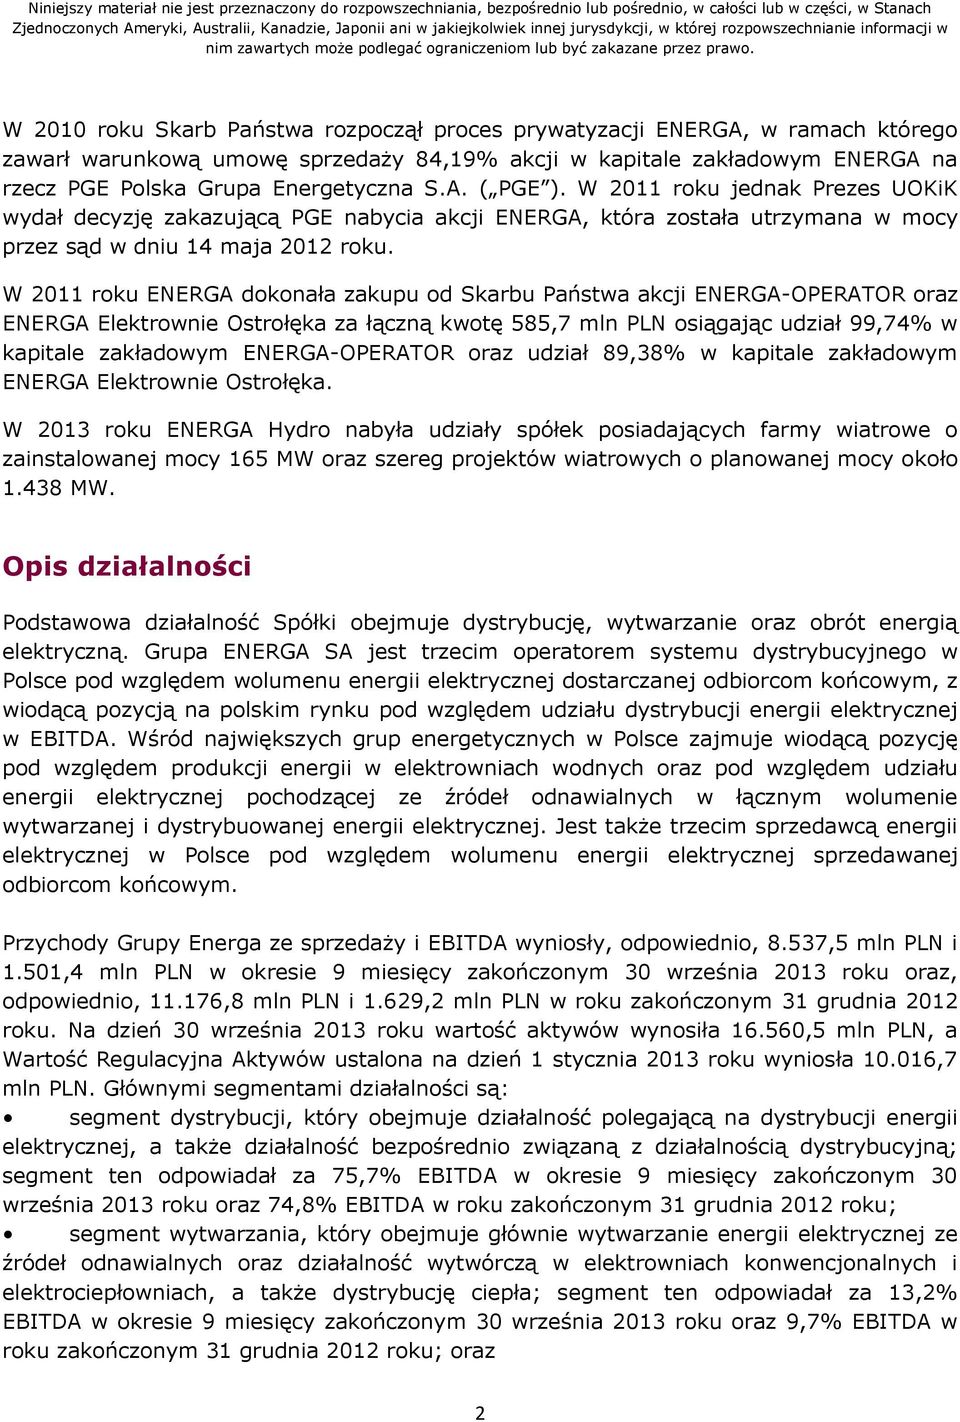 W 2011 roku ENERGA dokonała zakupu od Skarbu Państwa akcji ENERGA-OPERATOR oraz ENERGA Elektrownie Ostrołęka za łączną kwotę 585,7 mln PLN osiągając udział 99,74% w kapitale zakładowym